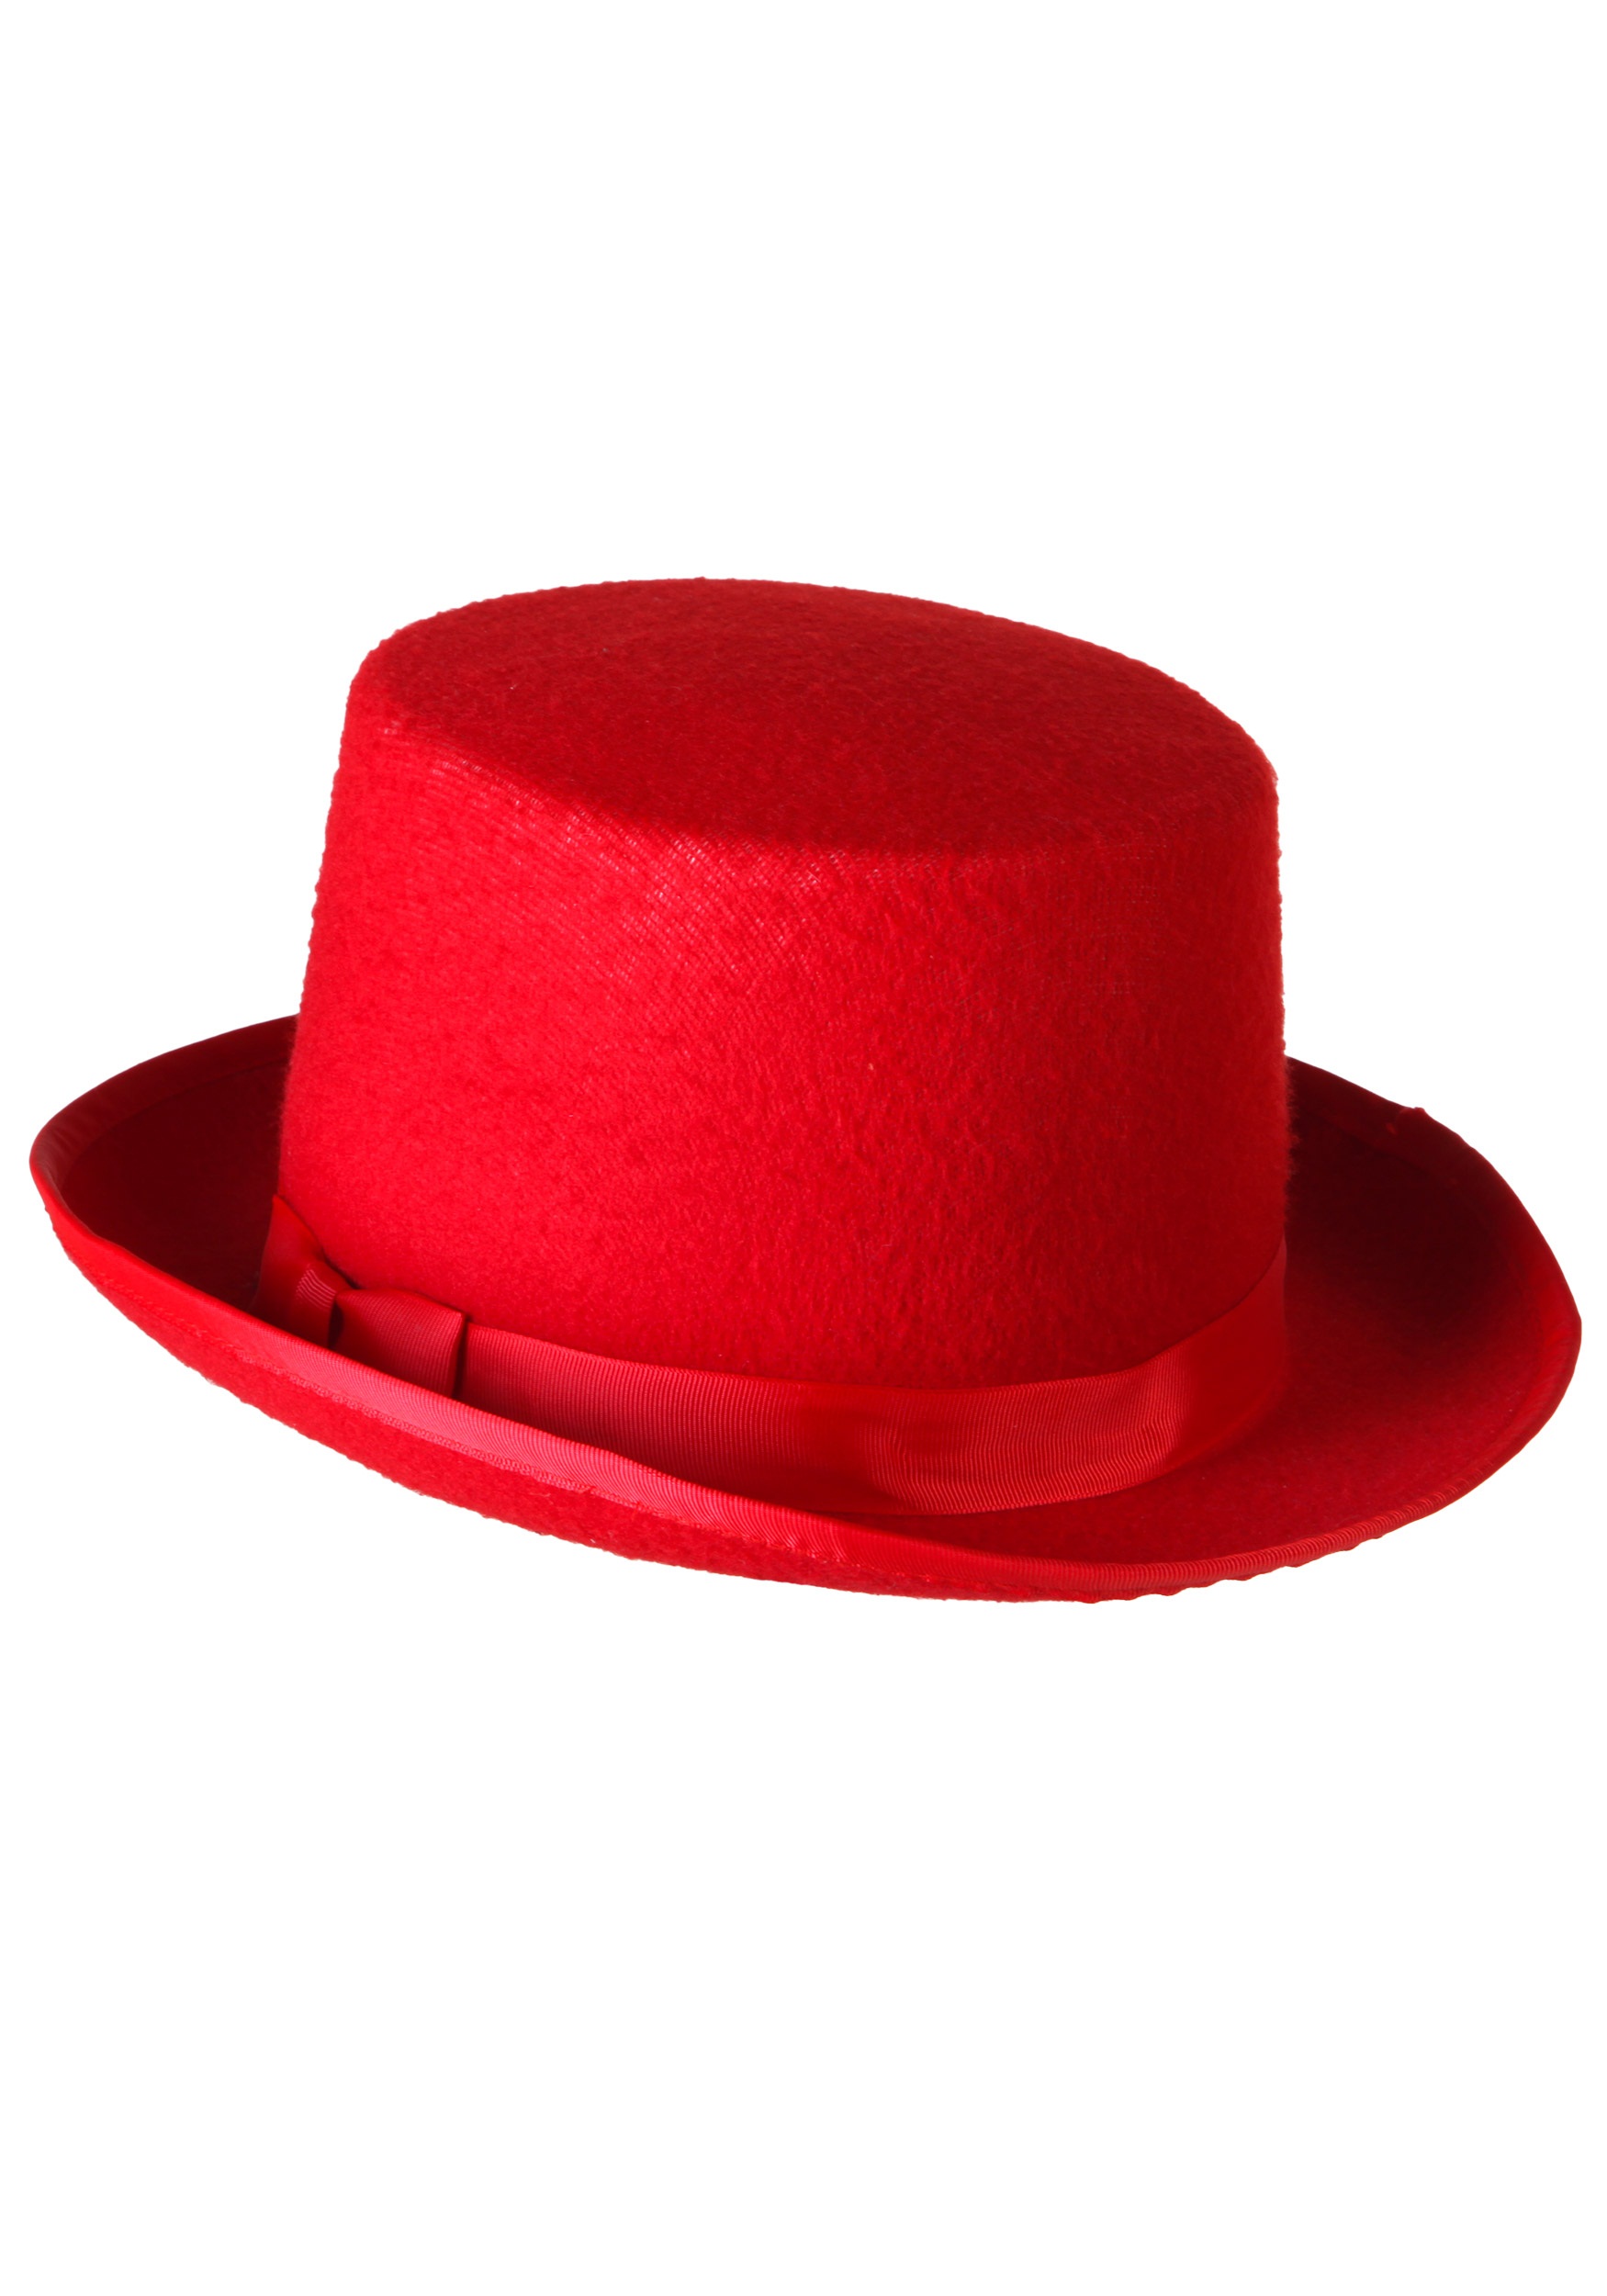 Ред хат. Шляпа красная. Шляпа цвет: красный. Шляпа Red hat. Шляпа на белом фоне.